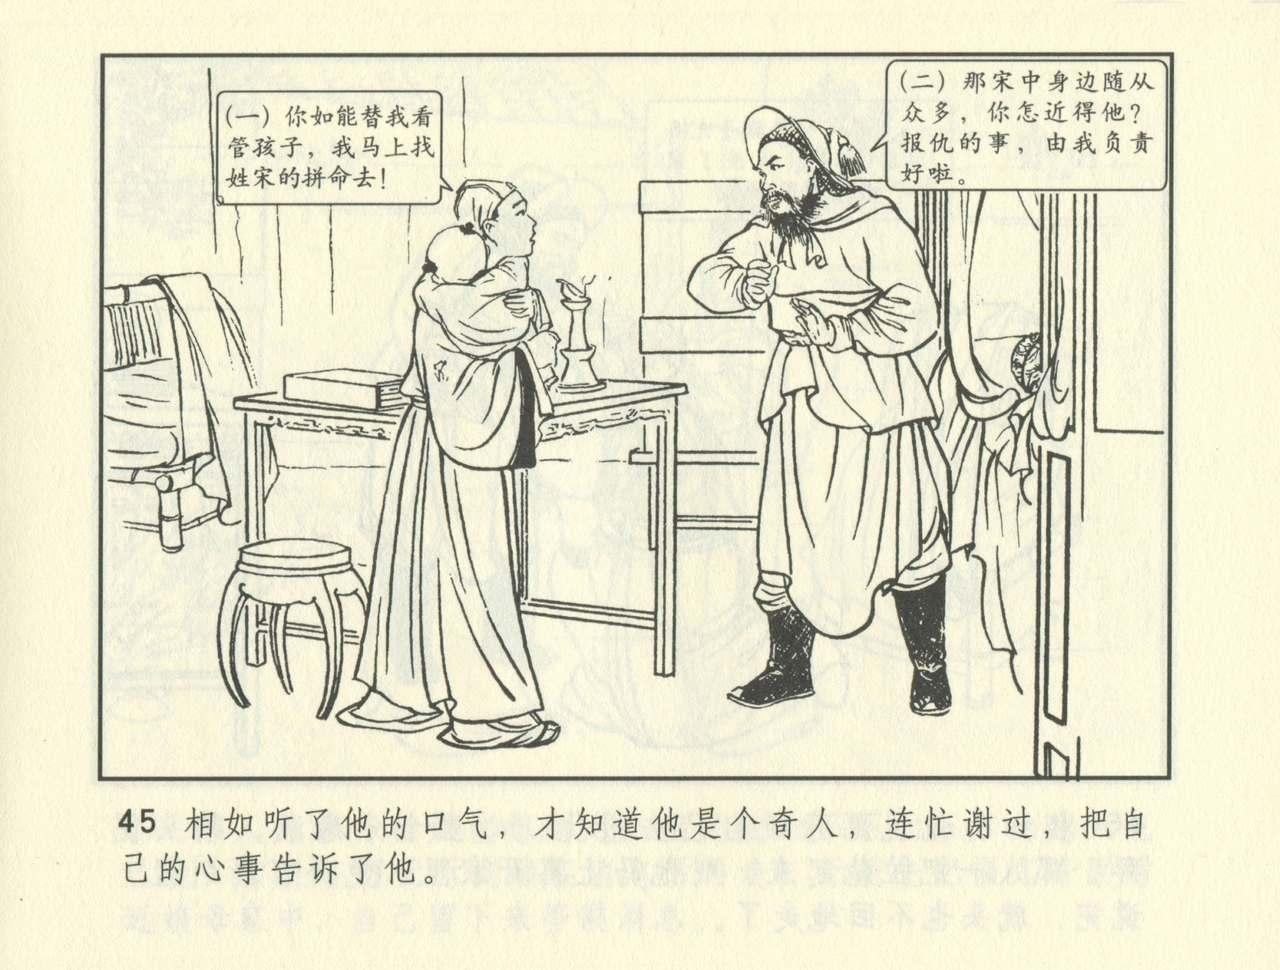 聊斋志异 张玮等绘 天津人民美术出版社 卷二十一 ~ 三十 385